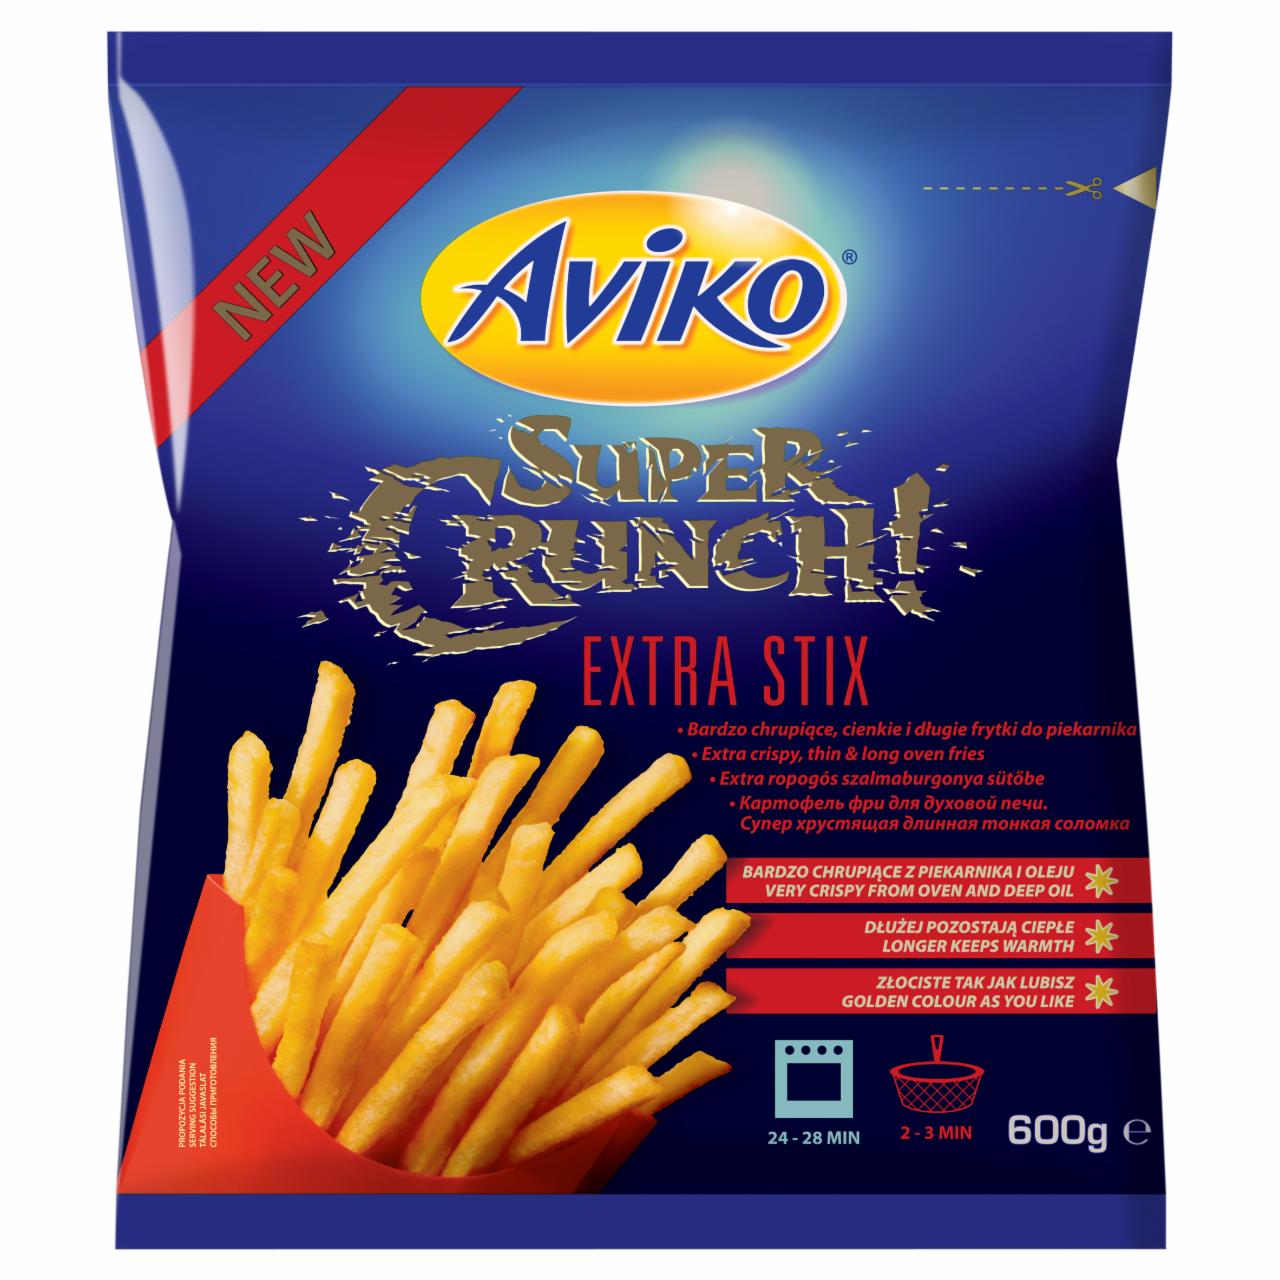 Zdjęcia - Aviko Super Crunch! Extra Stix Bardzo chrupiące Cienkie i długie frytki do piekarnika 600 g